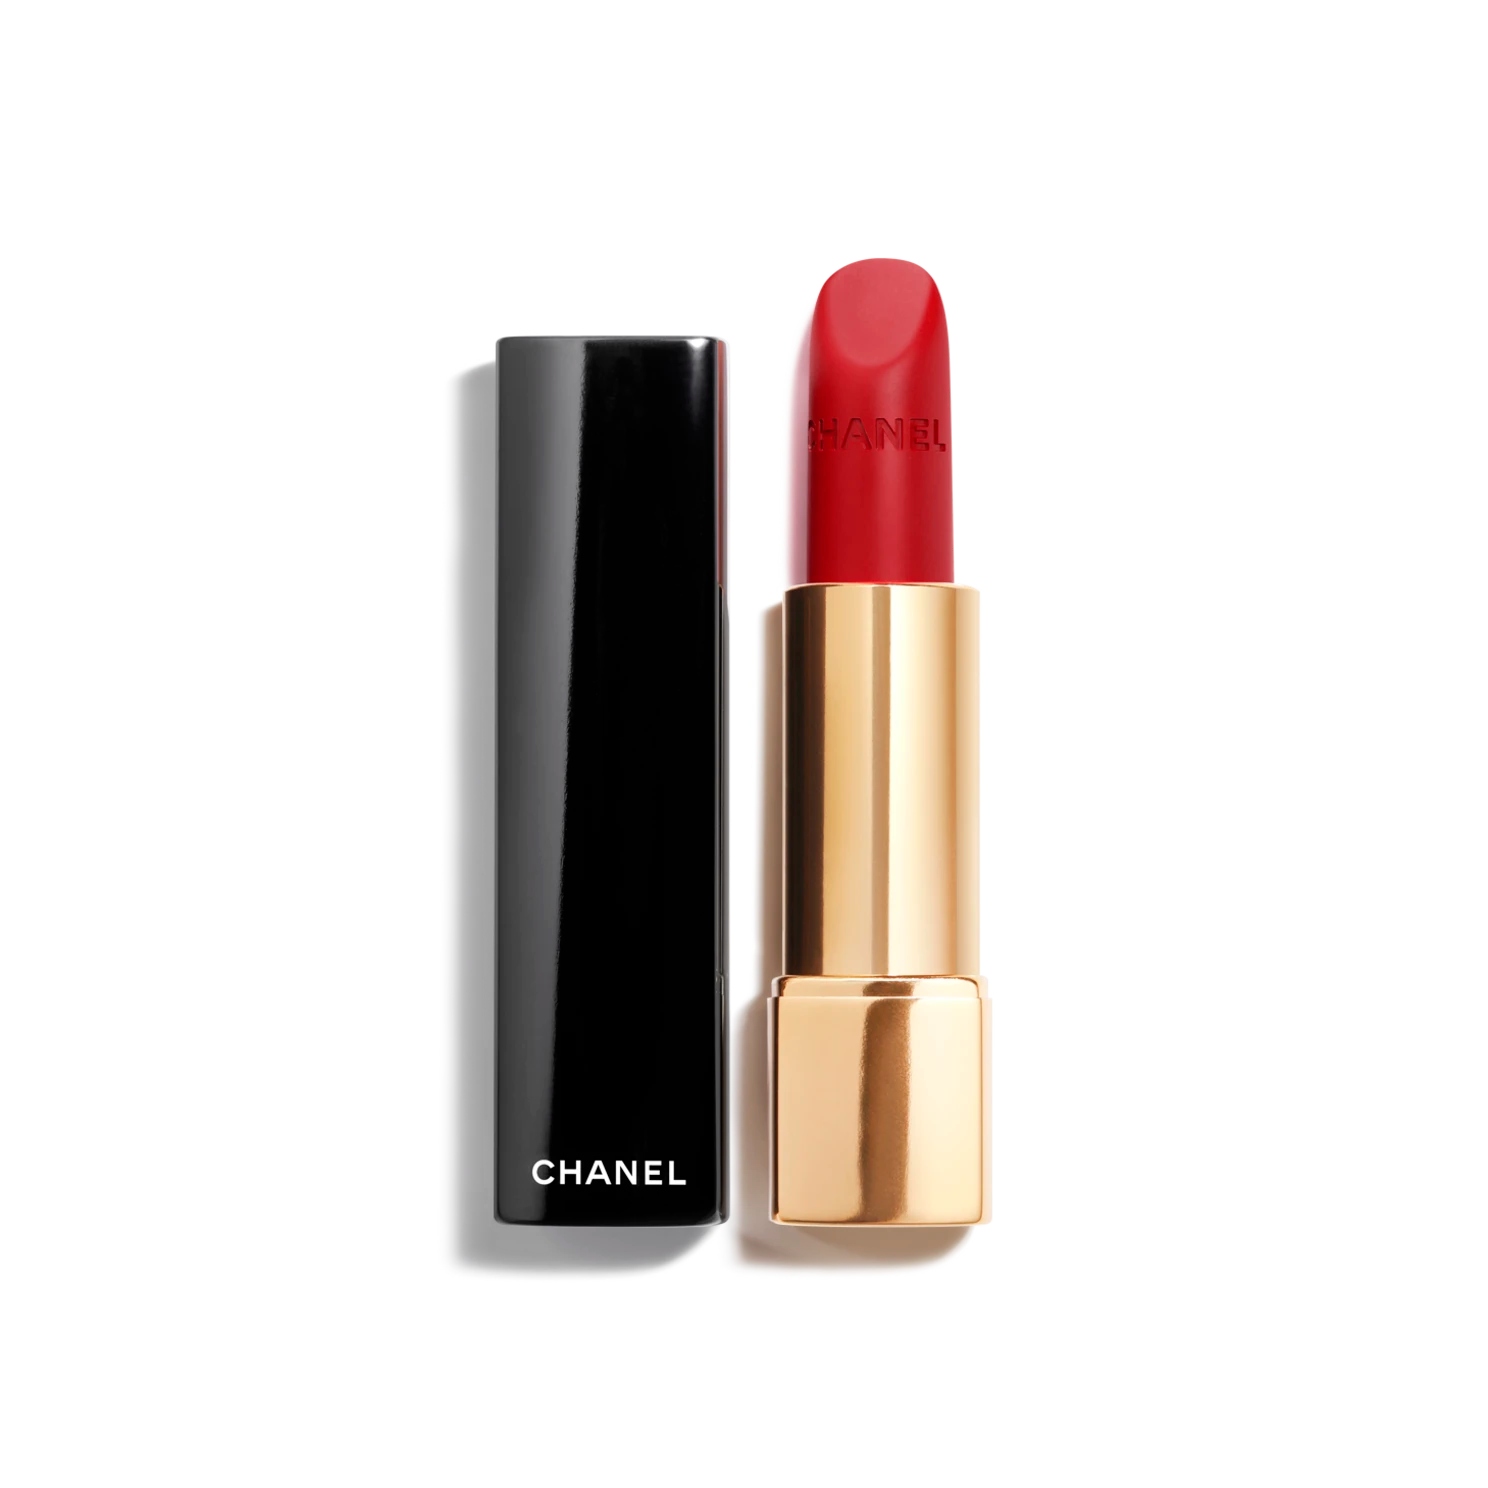 The 17 Best Chanel Lipsticks, Chosen By a Makeup Artist